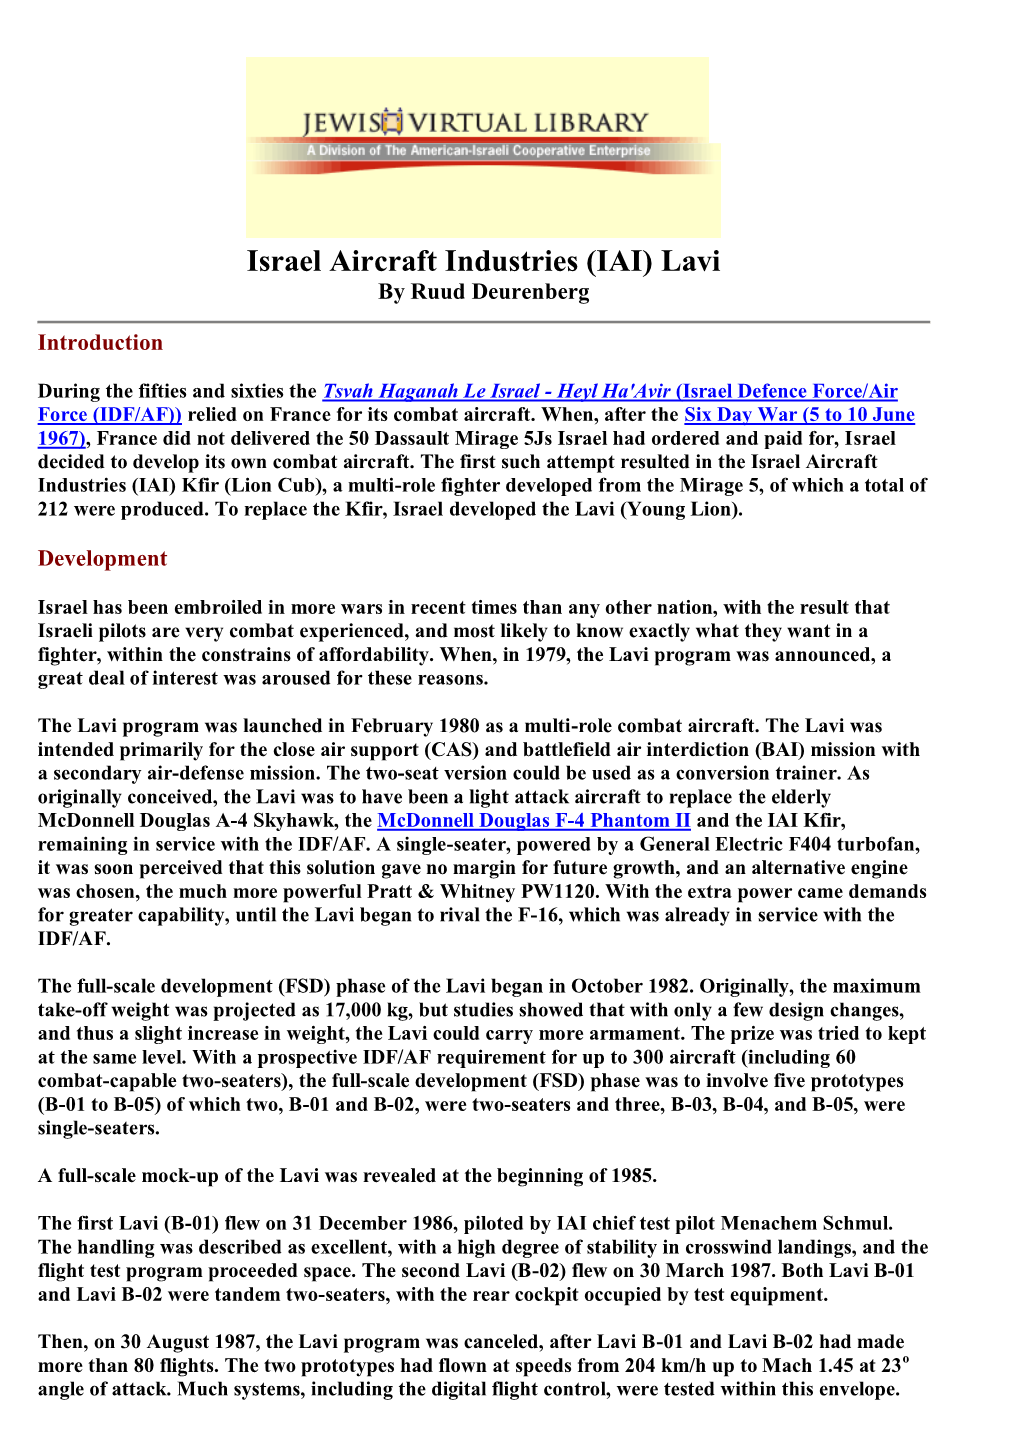 Israel Aircraft Industries (IAI) Lavi by Ruud Deurenberg